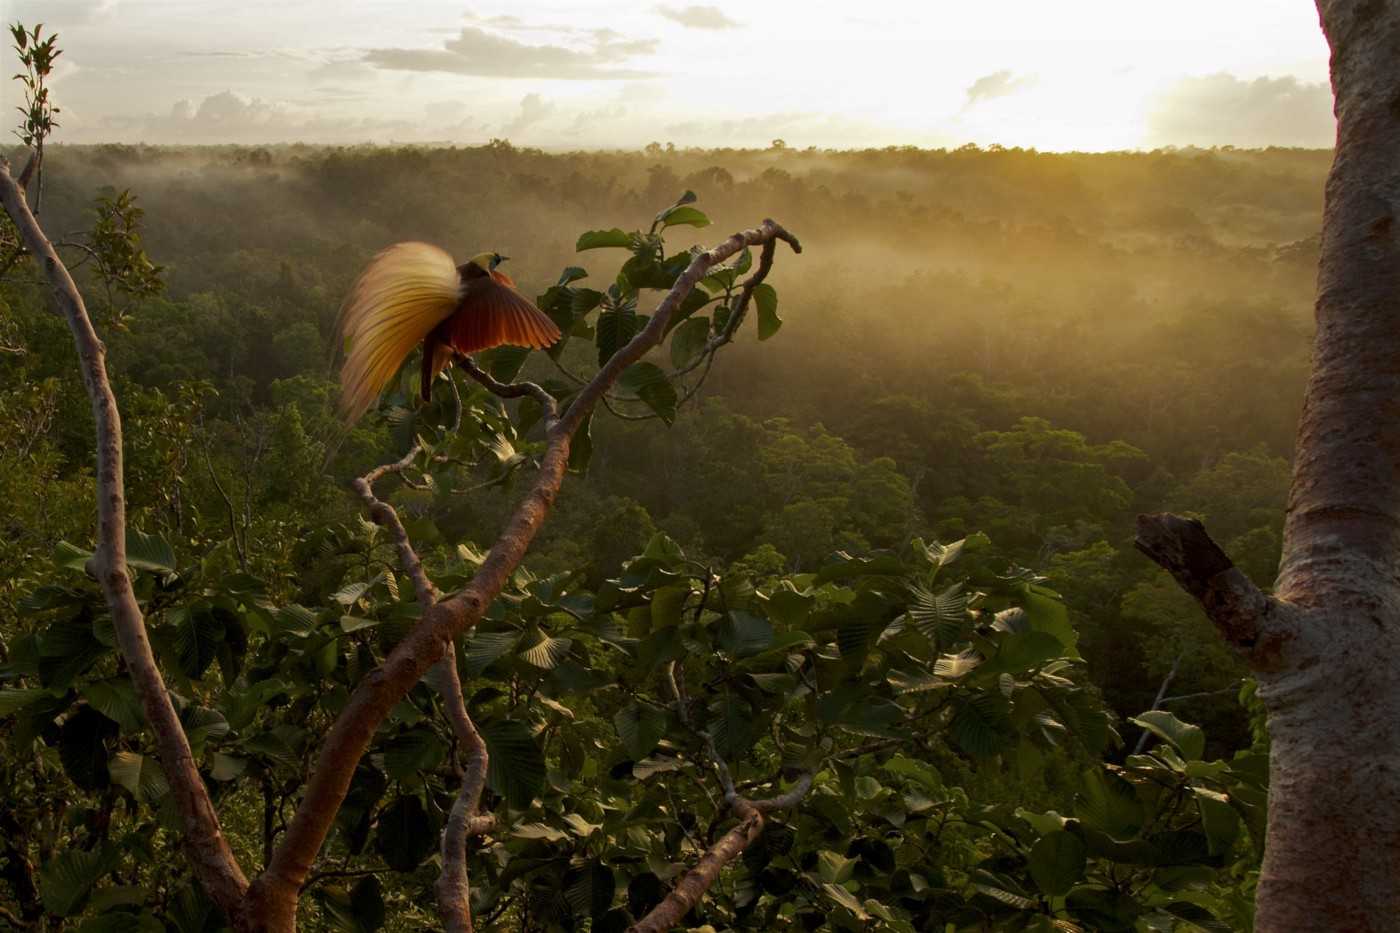 Gambar dibuat oleh Laboratorium Ilmu Burung di Cornell University, New York, Amerika Serikat dan fotografer National Geographic Tim Lama sebagai bagian dari Bird-of-Paradise Project (Proyek Burung Cendrawasih) sekaligus menjadi foto yang ikonik untuk kampanye Save Aru.